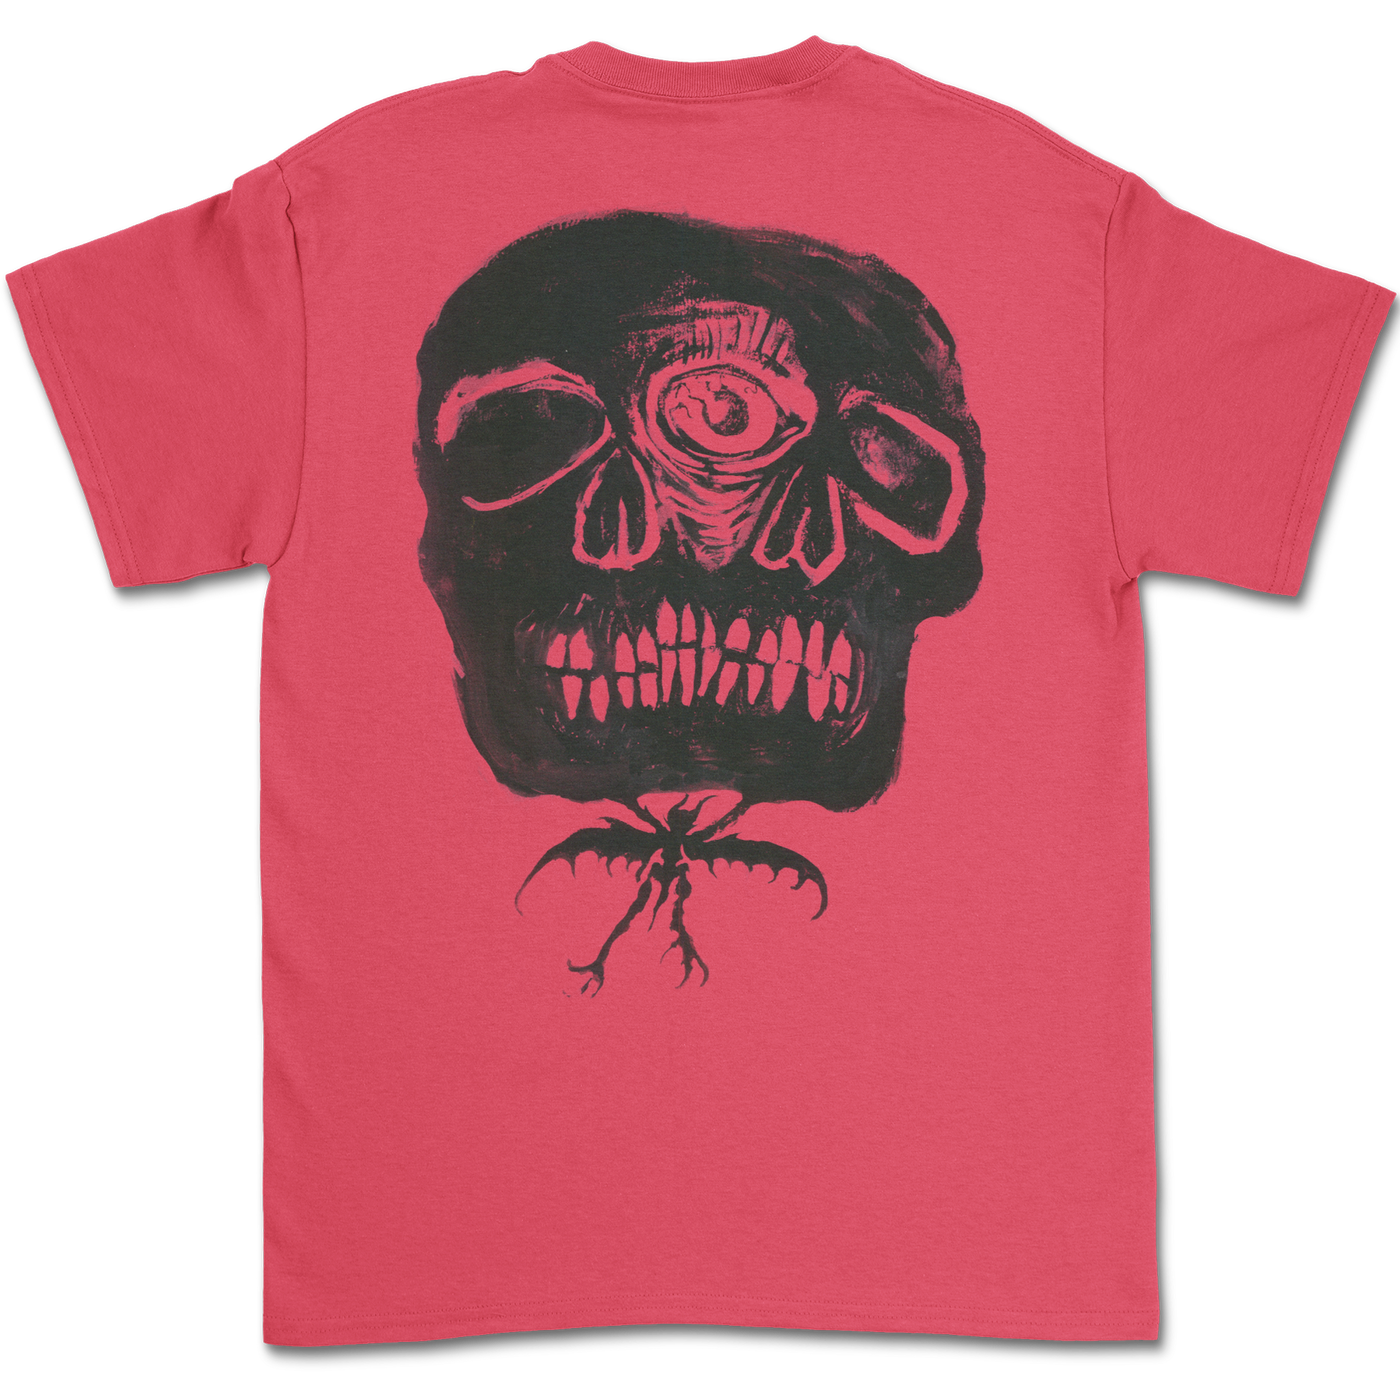 Pink Skull T-Shirt